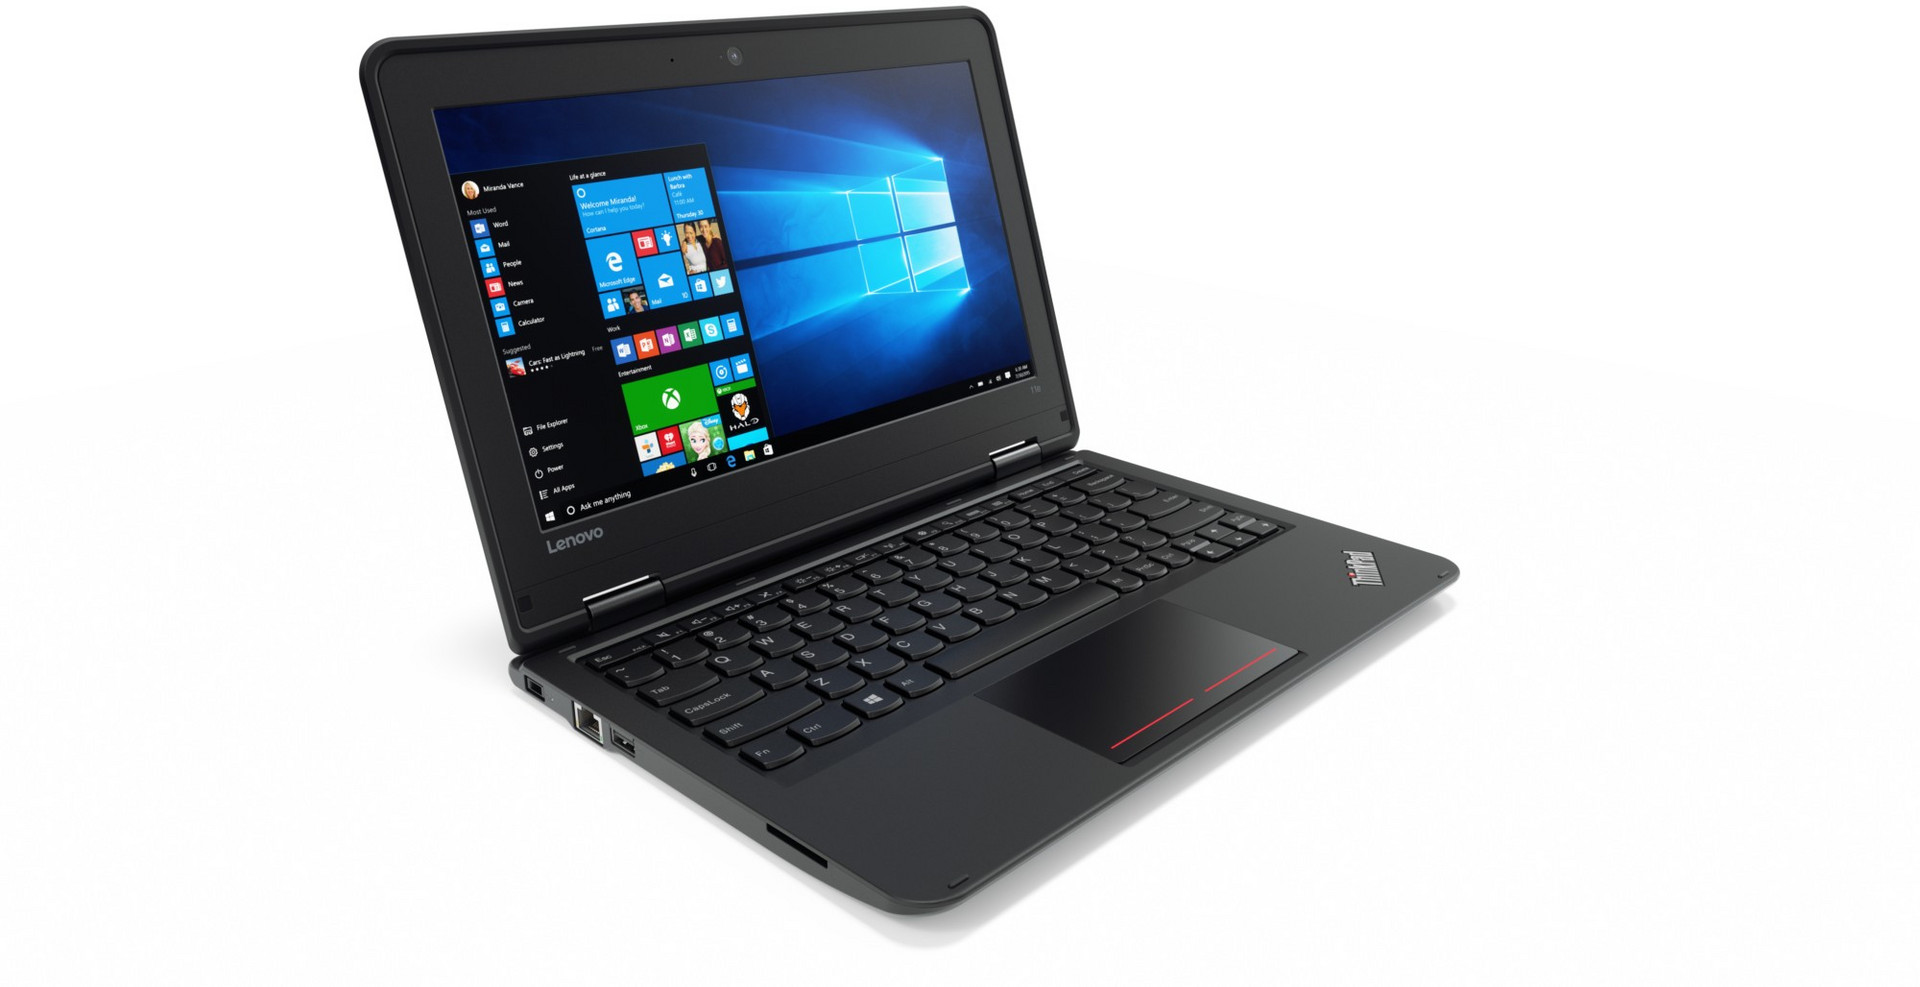 Lenovo ThinkPad Yoga 11e 20GB000XMH  External Reviews